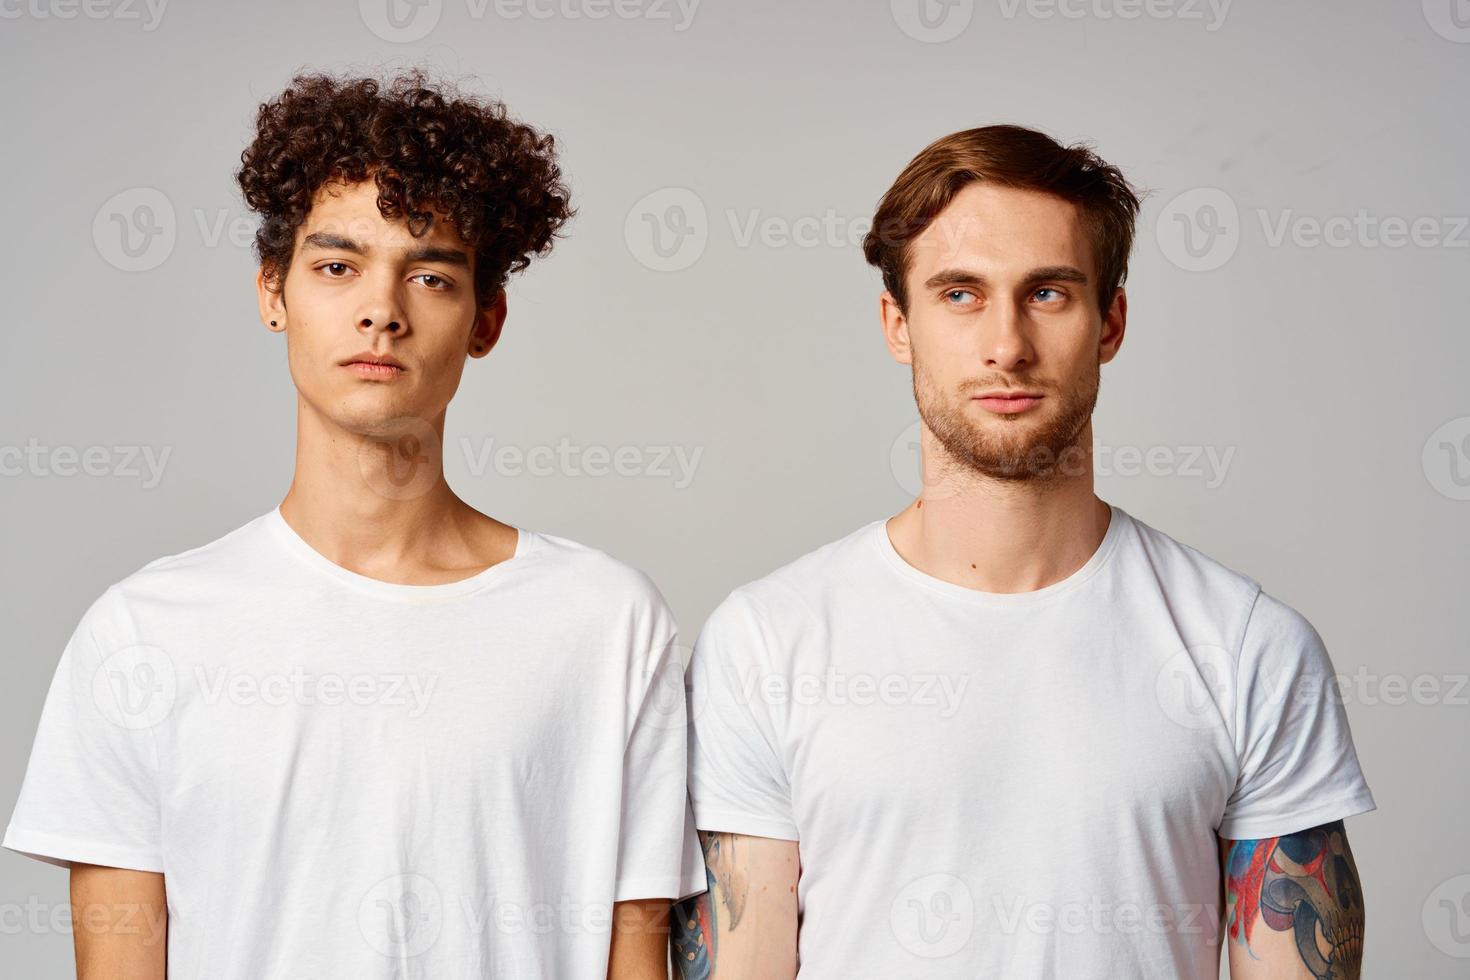 zwei freunde im Weiß T-Shirts Spaß Emotionen isoliert Hintergrund foto